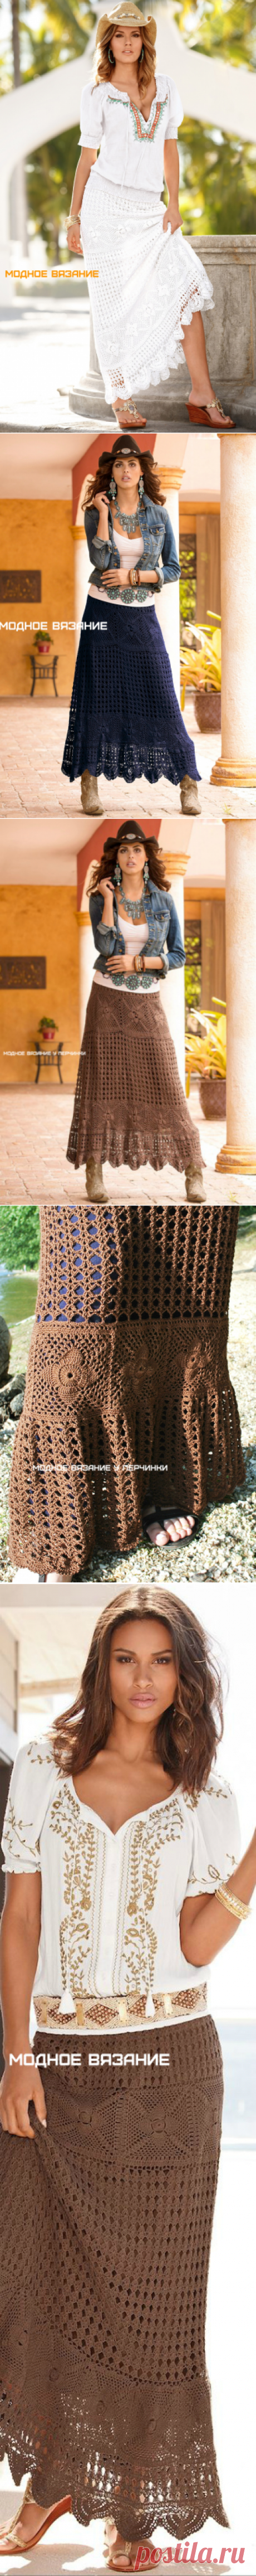 Шикарная юбка крючком в стиле Бохо - Модное вязание